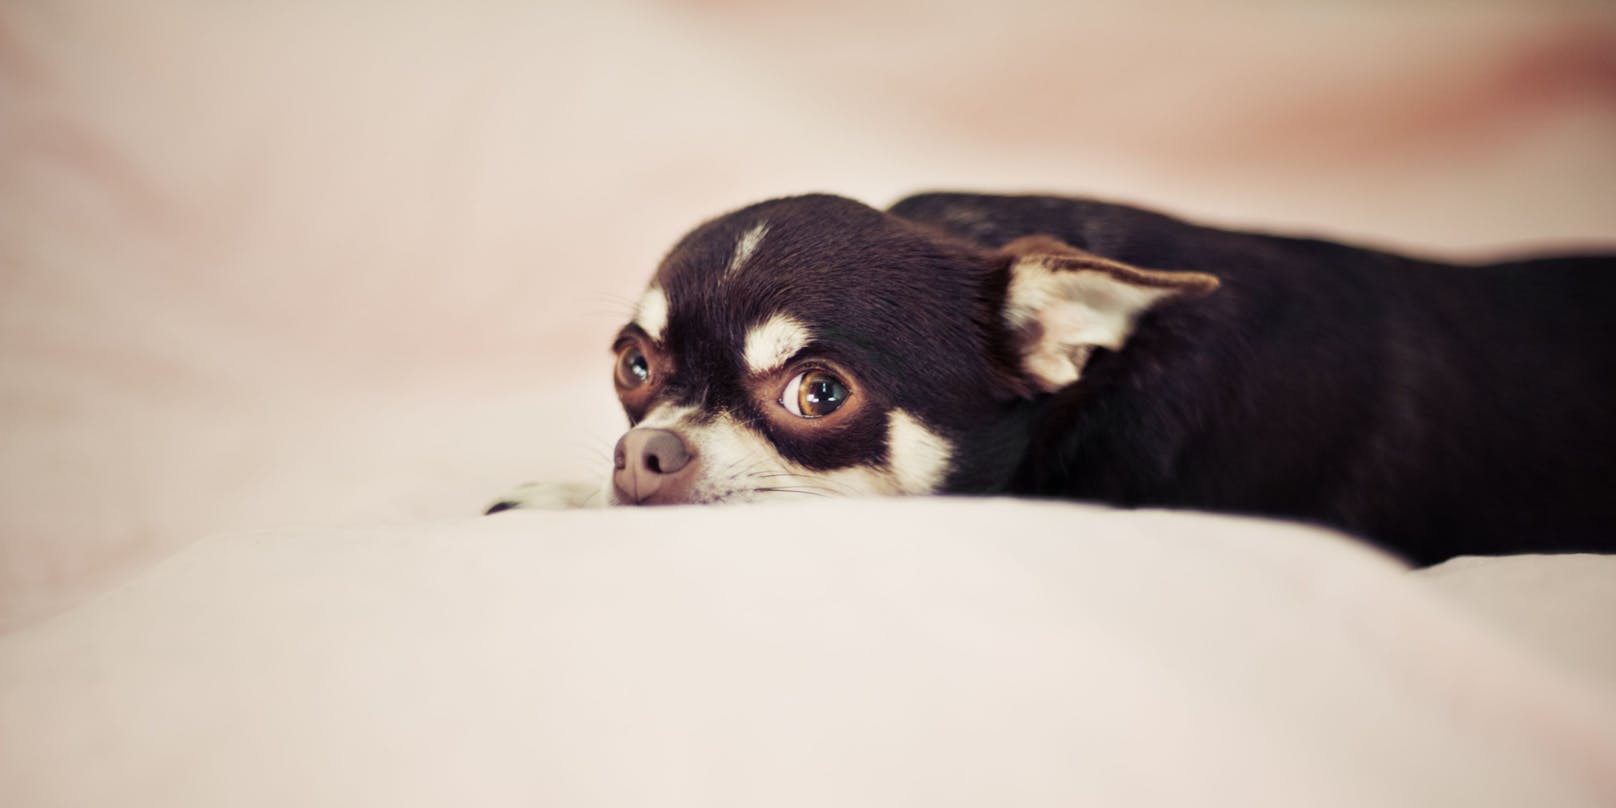 Mit dem Chihuahua in einem Bett zu schlafen wird sie in Zukunft wohl eher sein lassen.